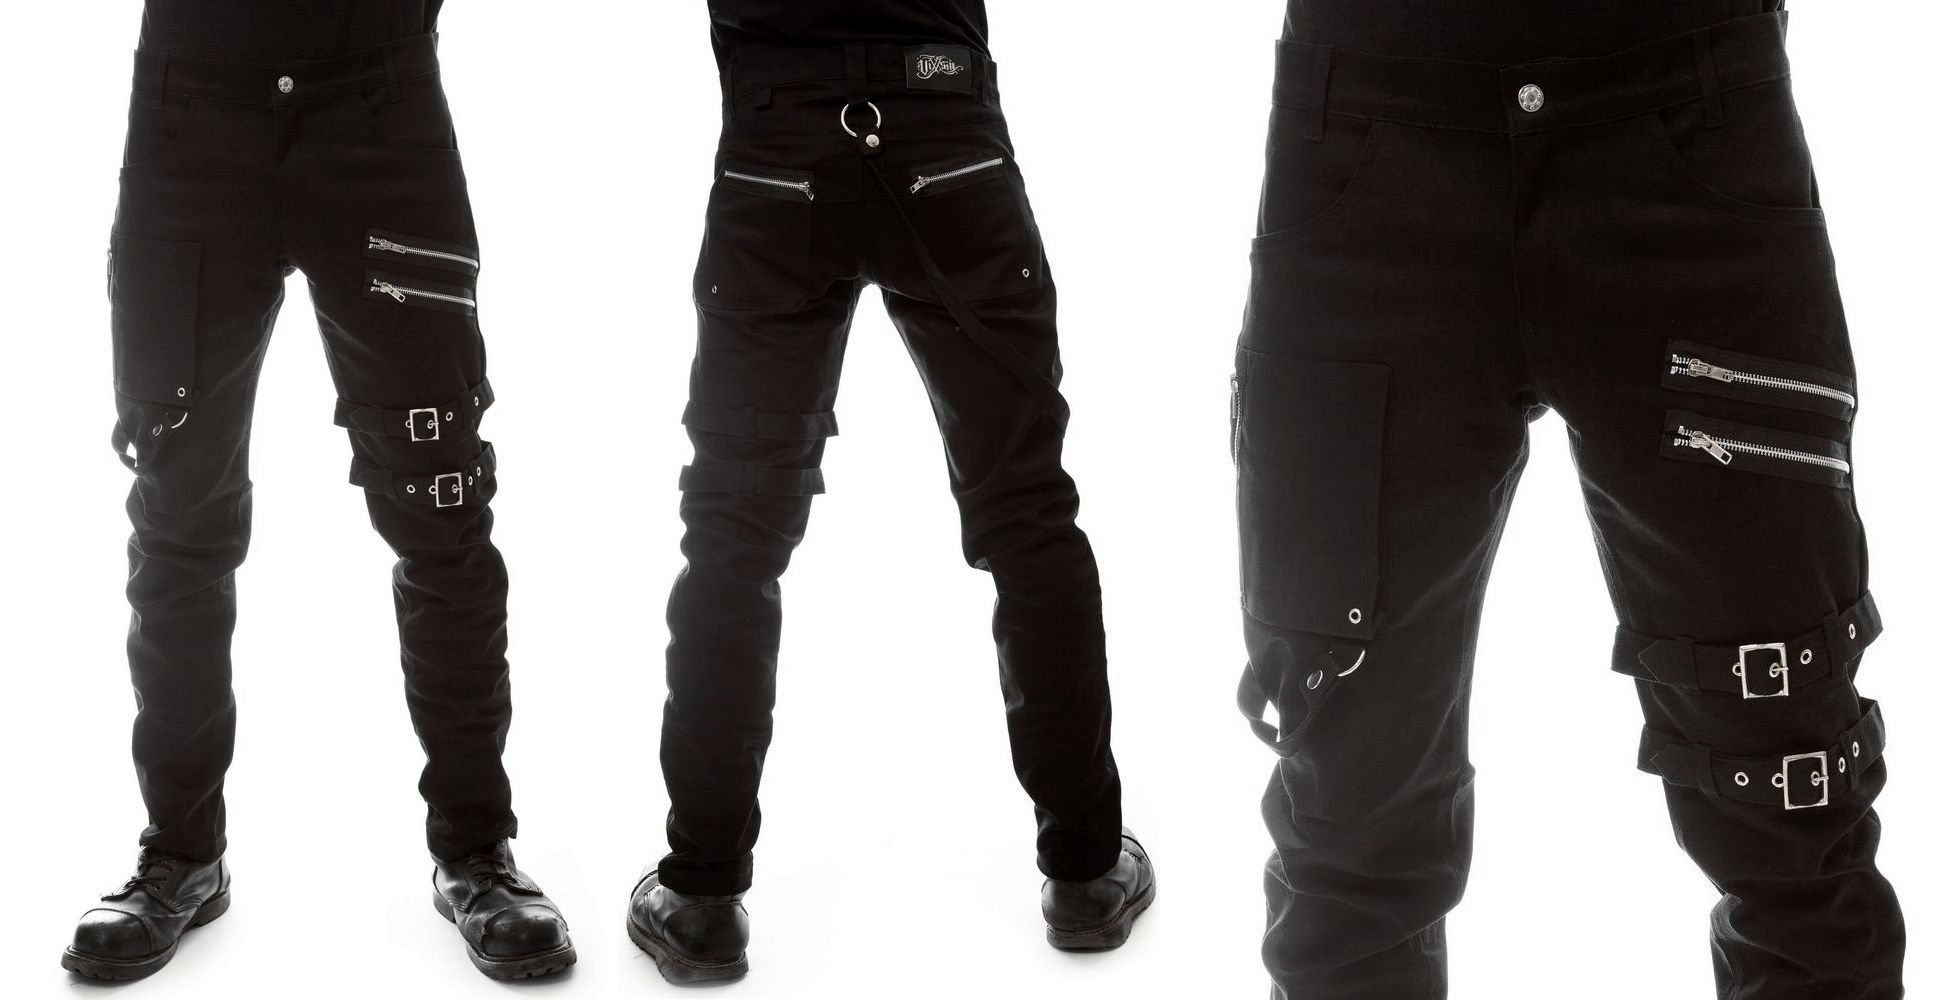 Gotické kalhoty pánské s přezkami a zipy